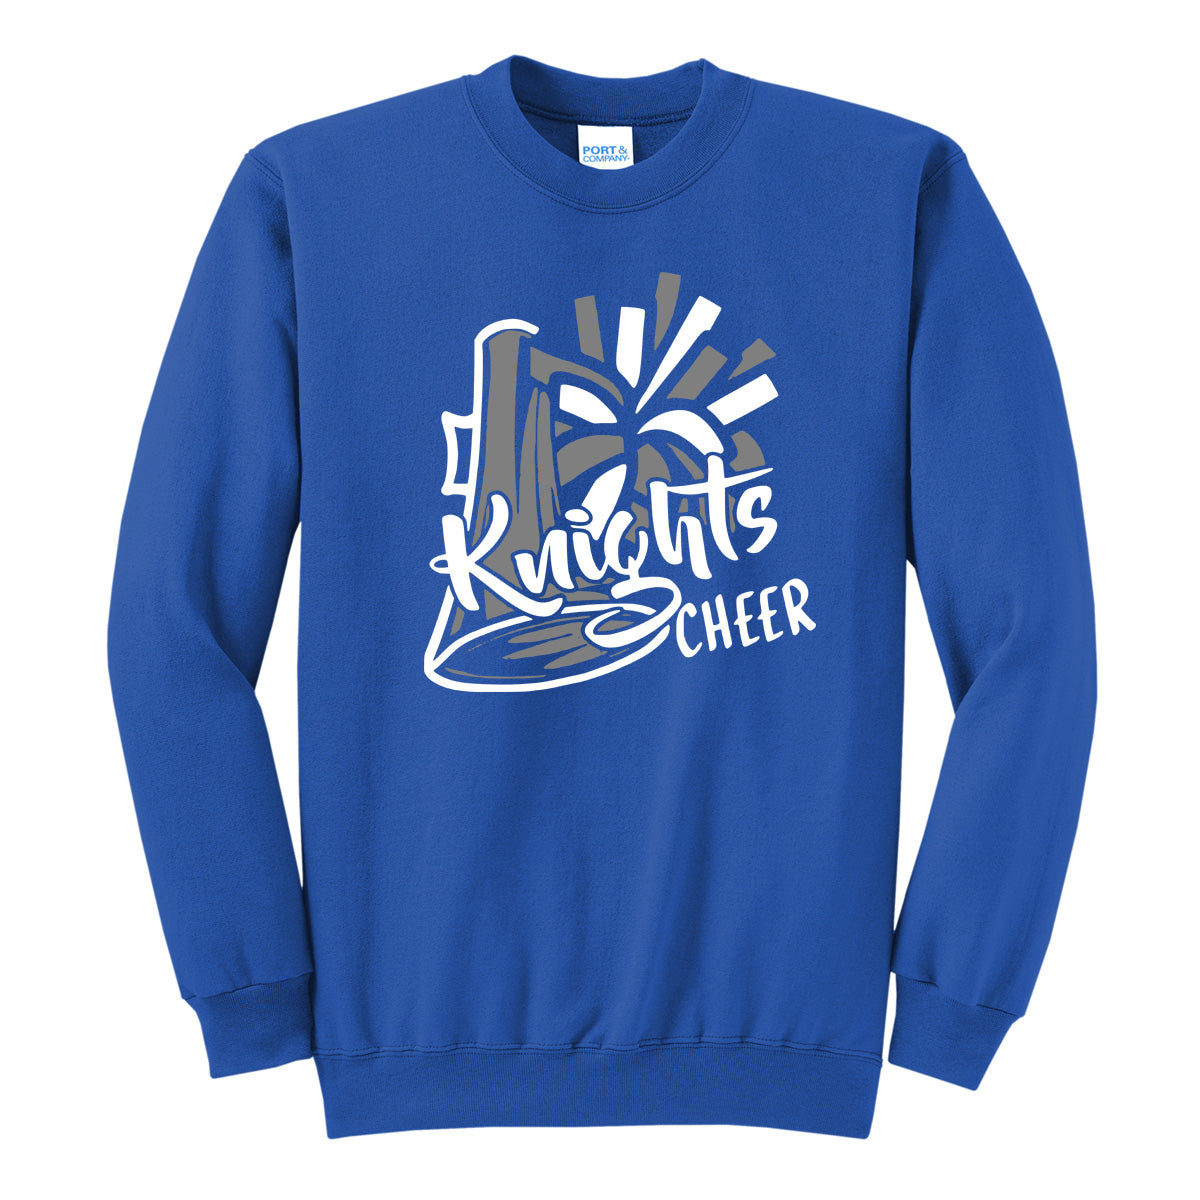 Windsor - Cheer - Knights Cheer - Royal (Tee/DriFit/Hoodie/Sweatshirt) - Southern Grace Creations